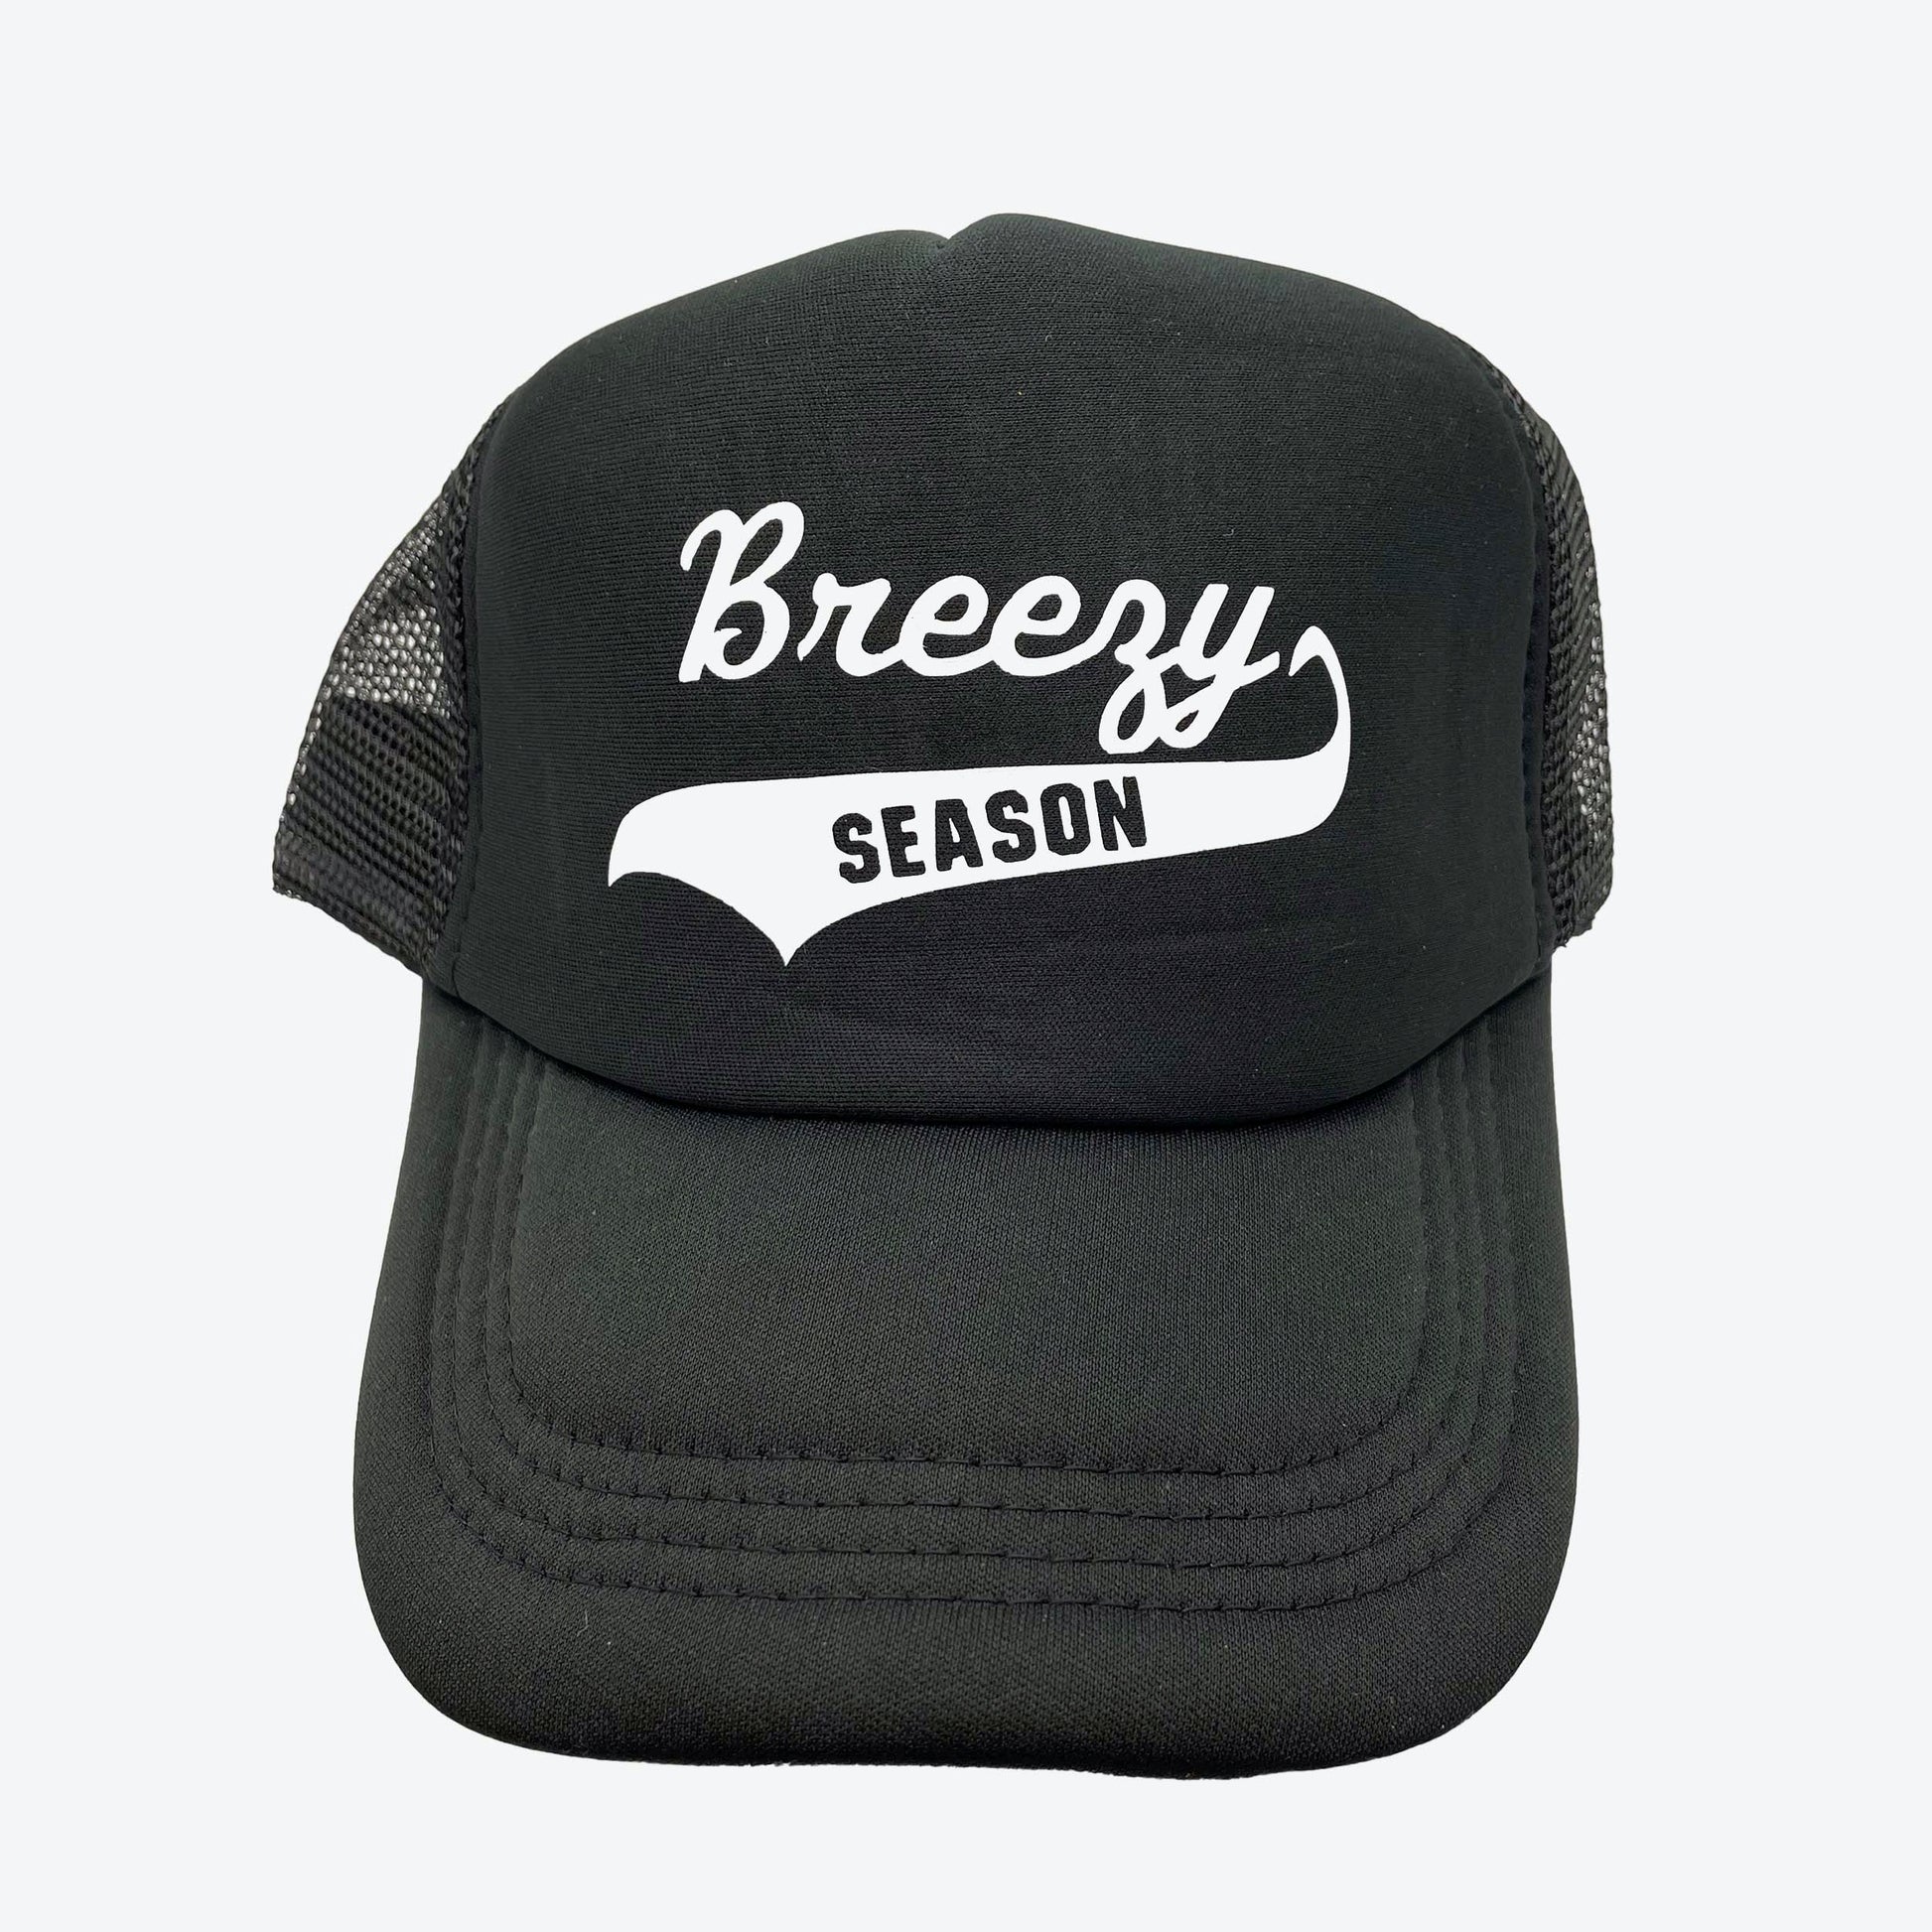 Black Trucker Hat - Breezy Season 